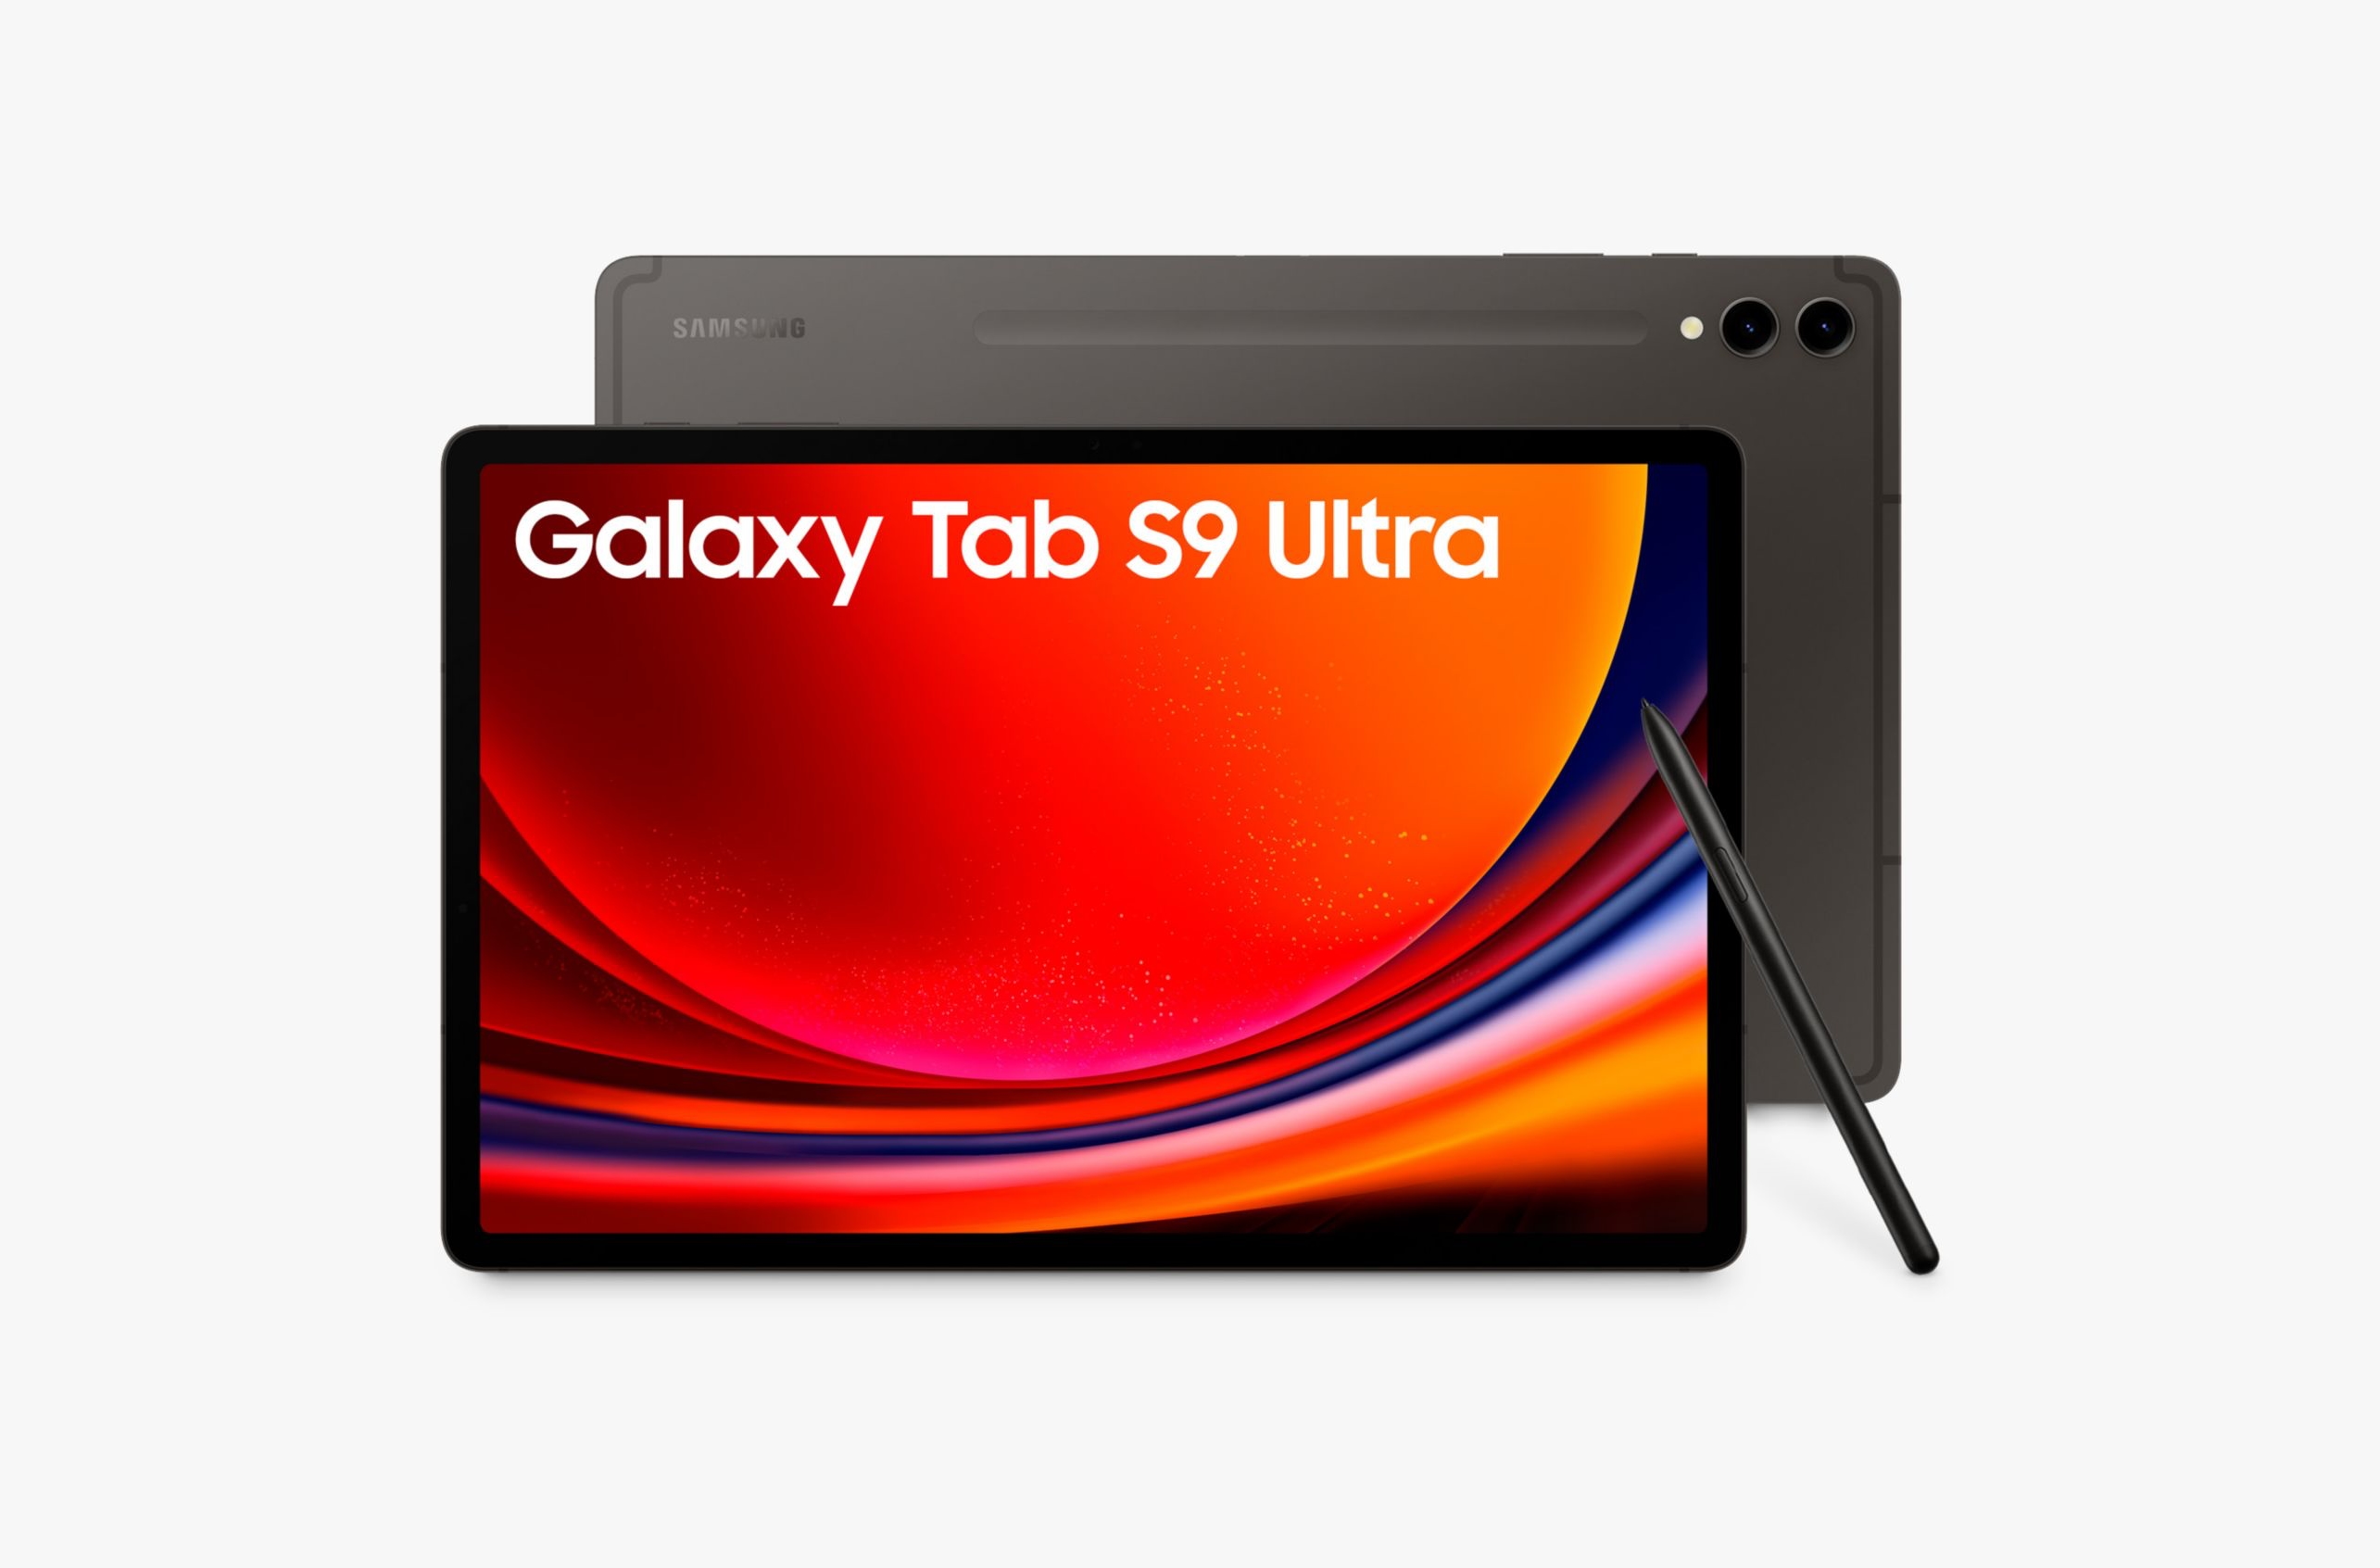 Dagens erbjudande: Samsung Galaxy Tab S9 Ultra med 14,6-tums skärm och 512 GB lagringsutrymme kan köpas på Amazon med en rabatt på $ 600